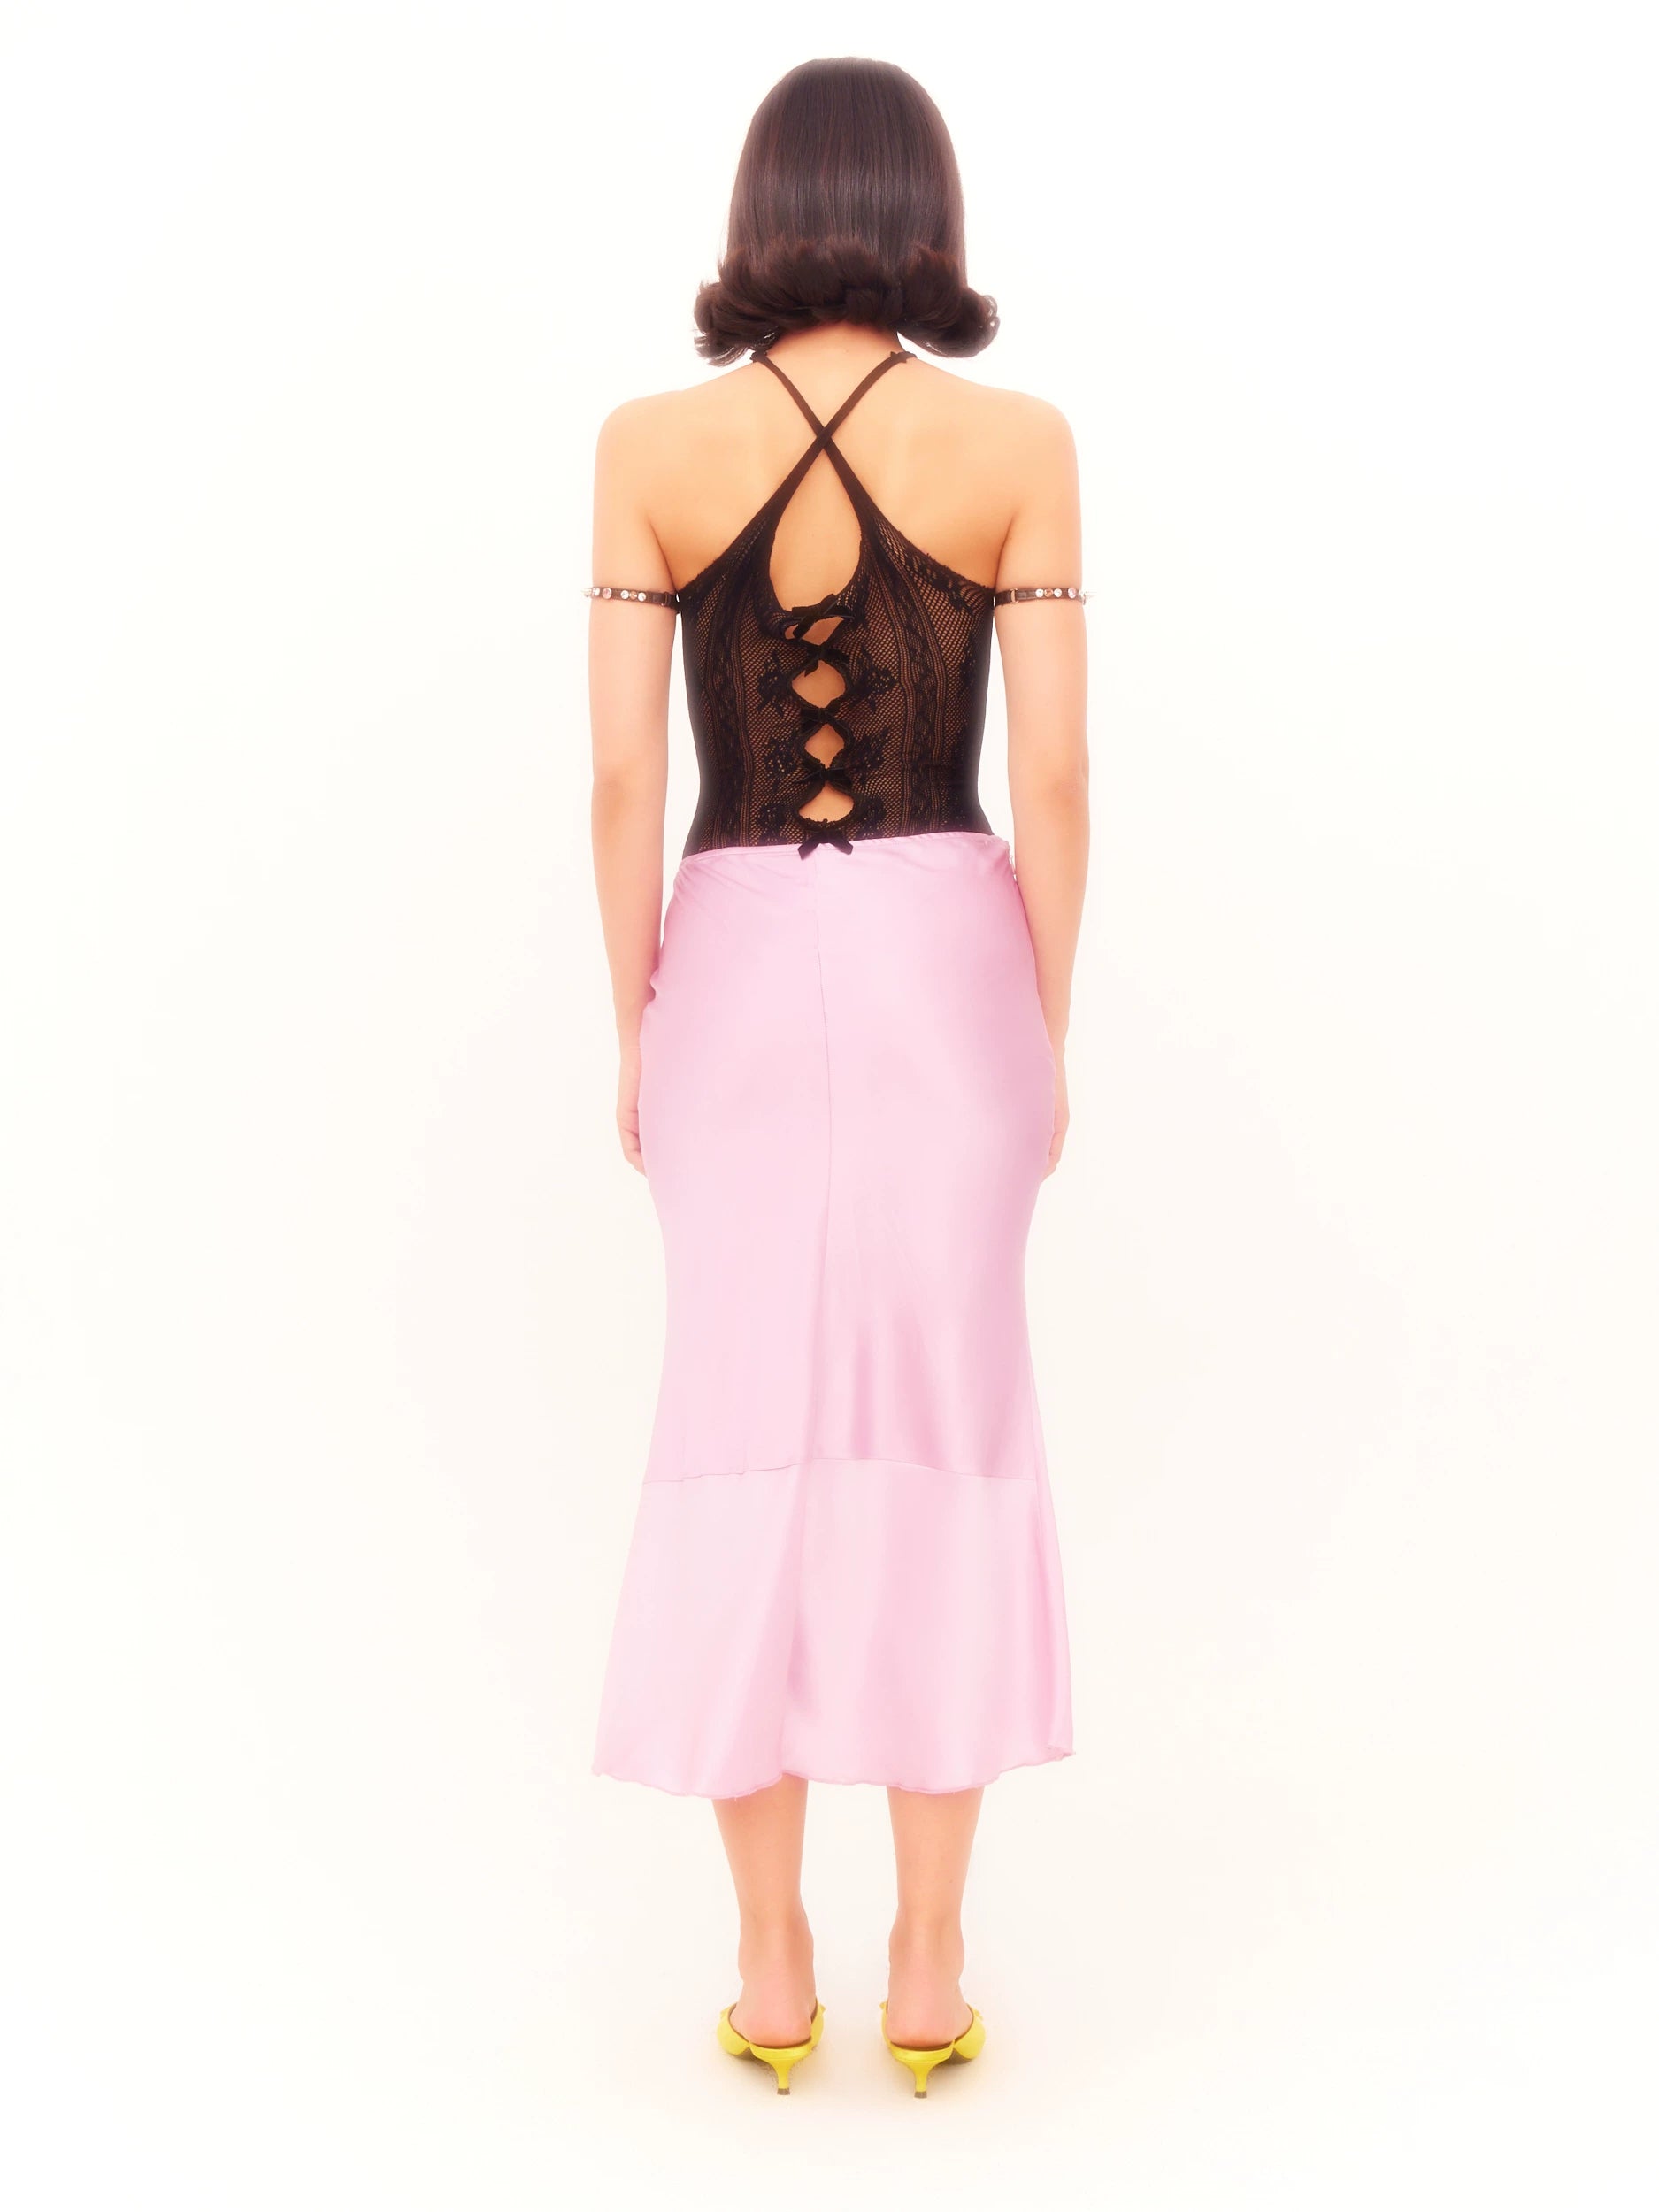 Black Velvet Bow-Embellished Lace Bodysuit Camisole - chiclara